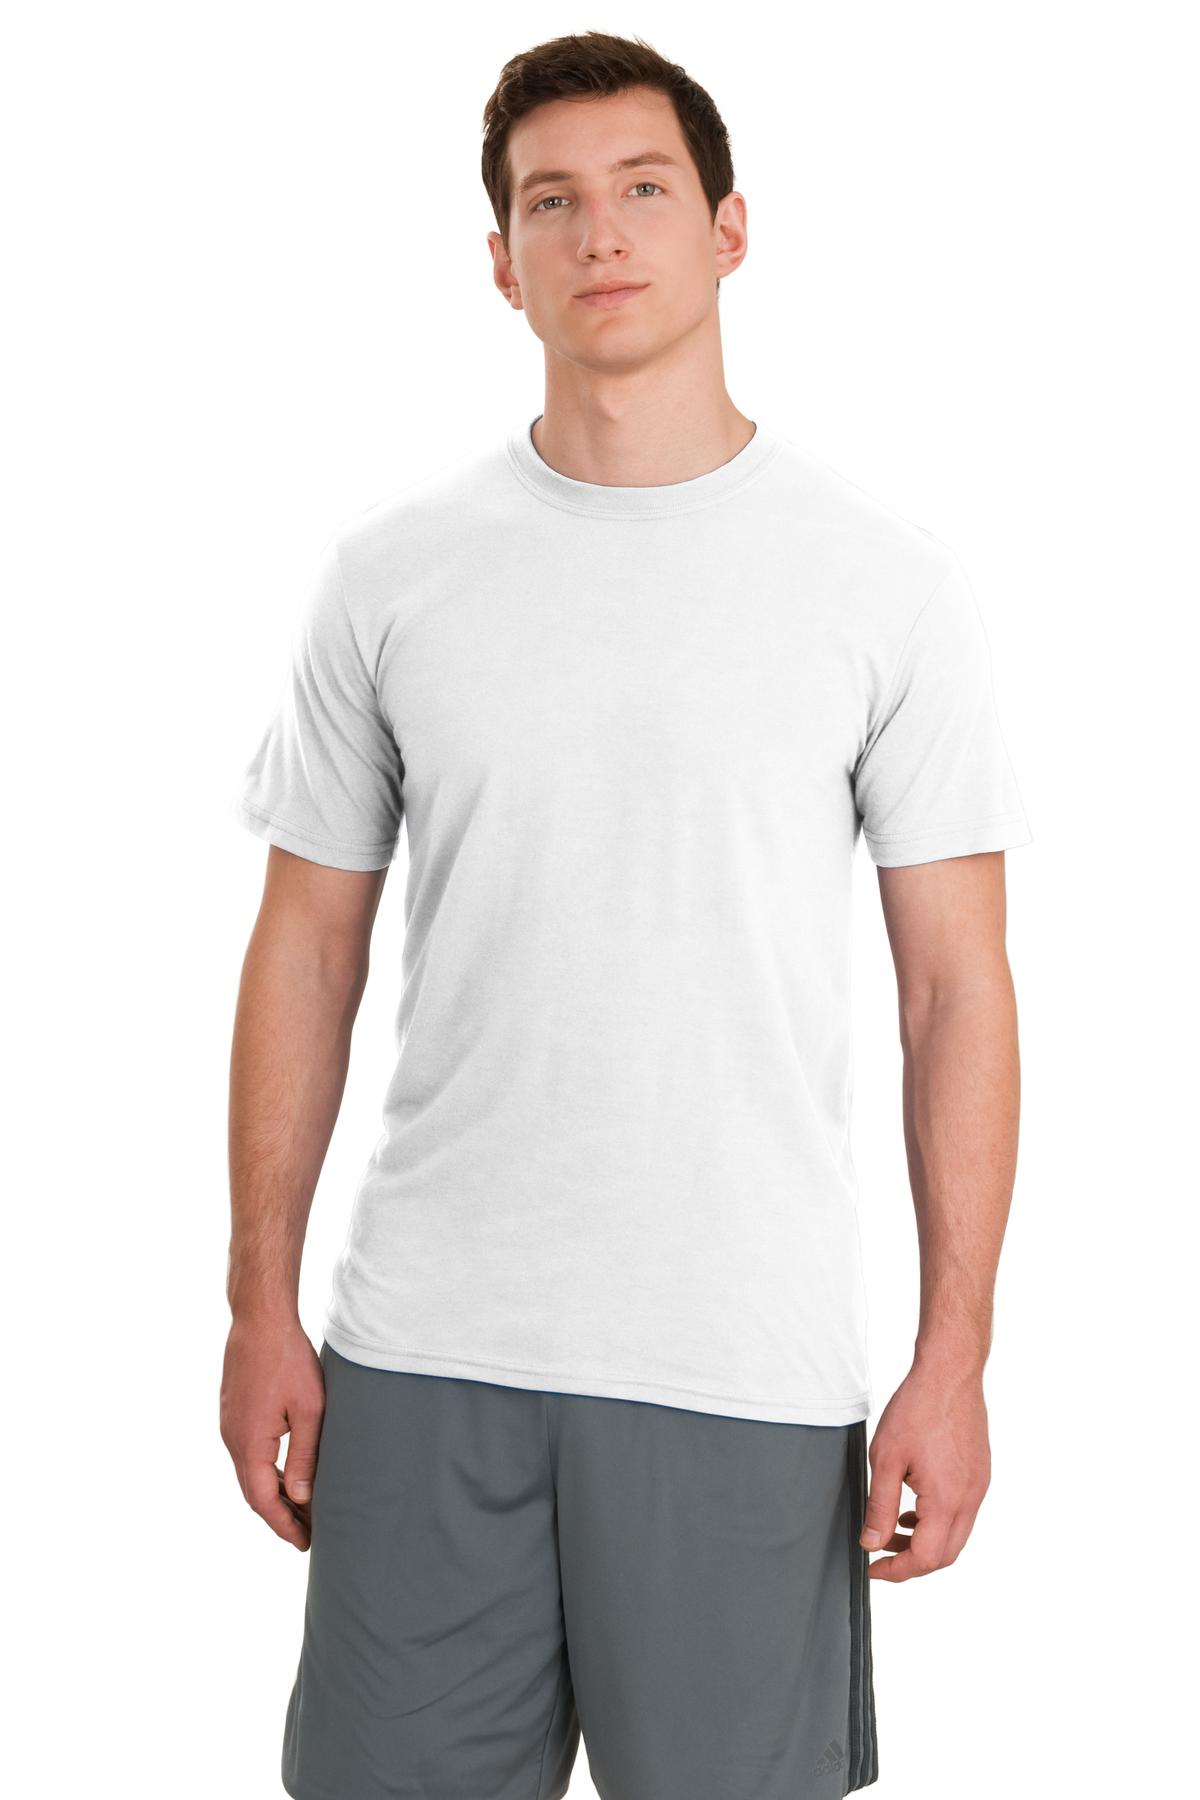 JERZEES  21M - Sport 100% Polyester T-Shirt